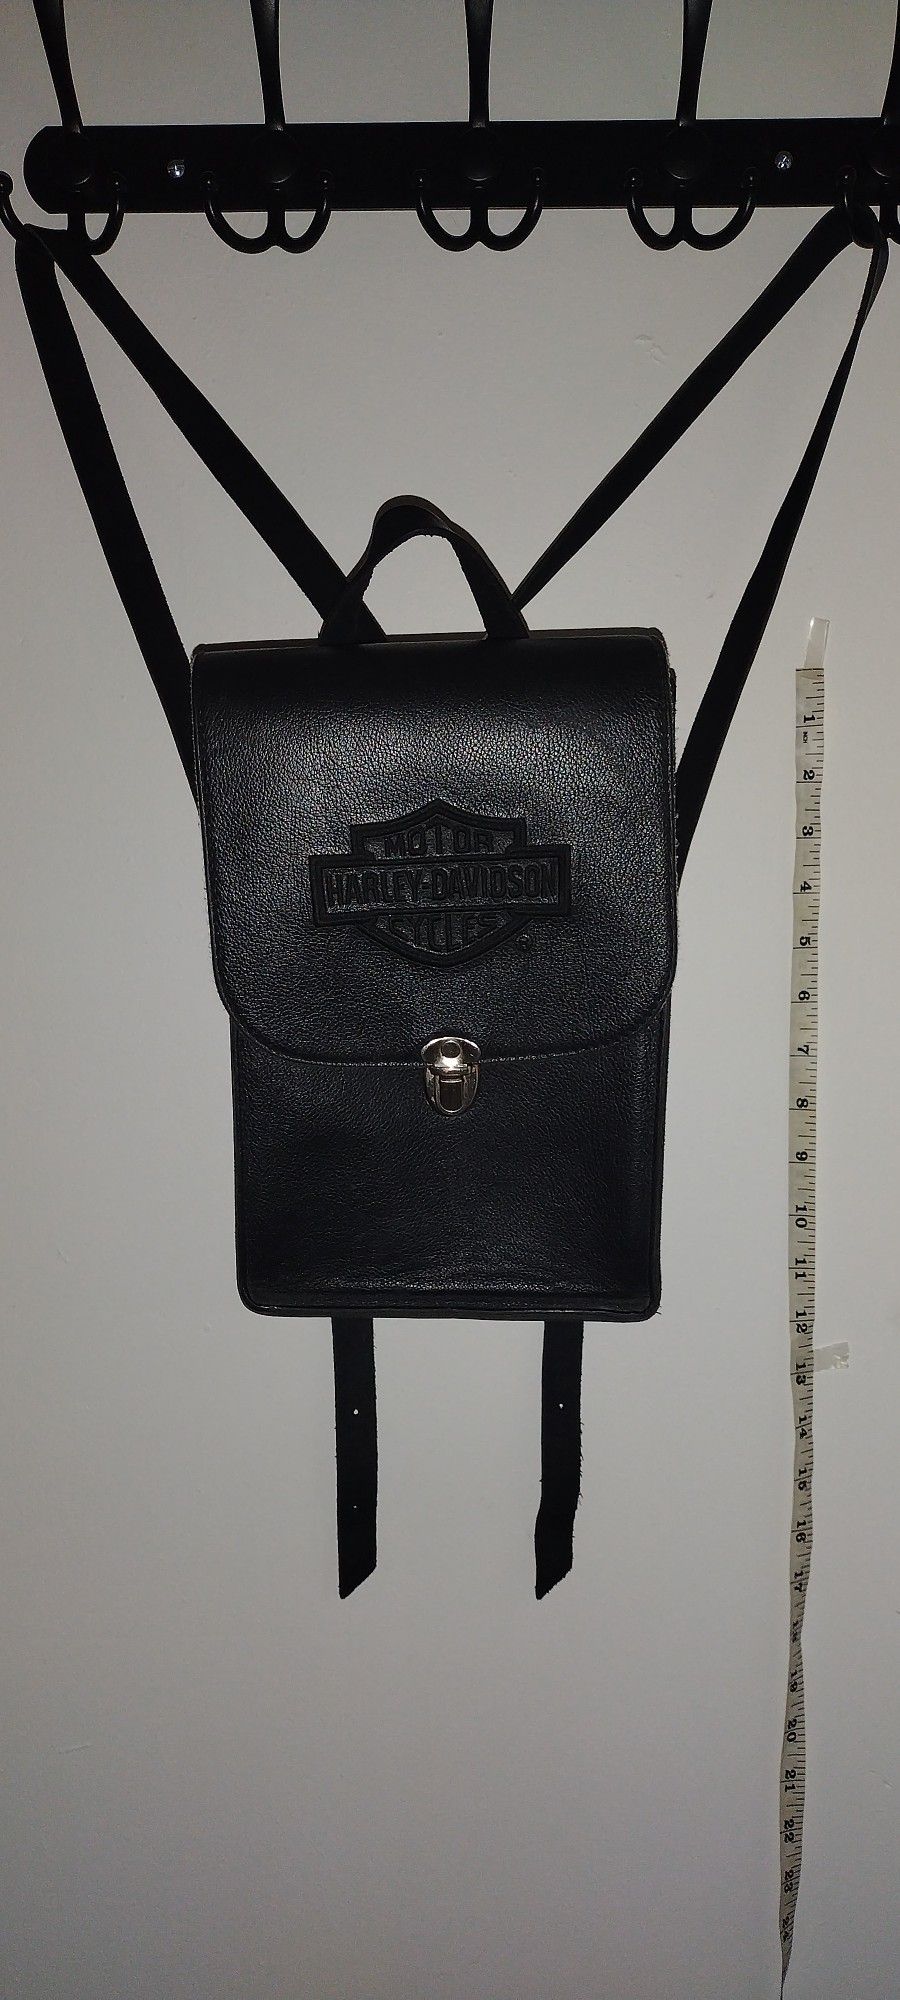 Vintage Harley Davidson Hard Leather Bag 